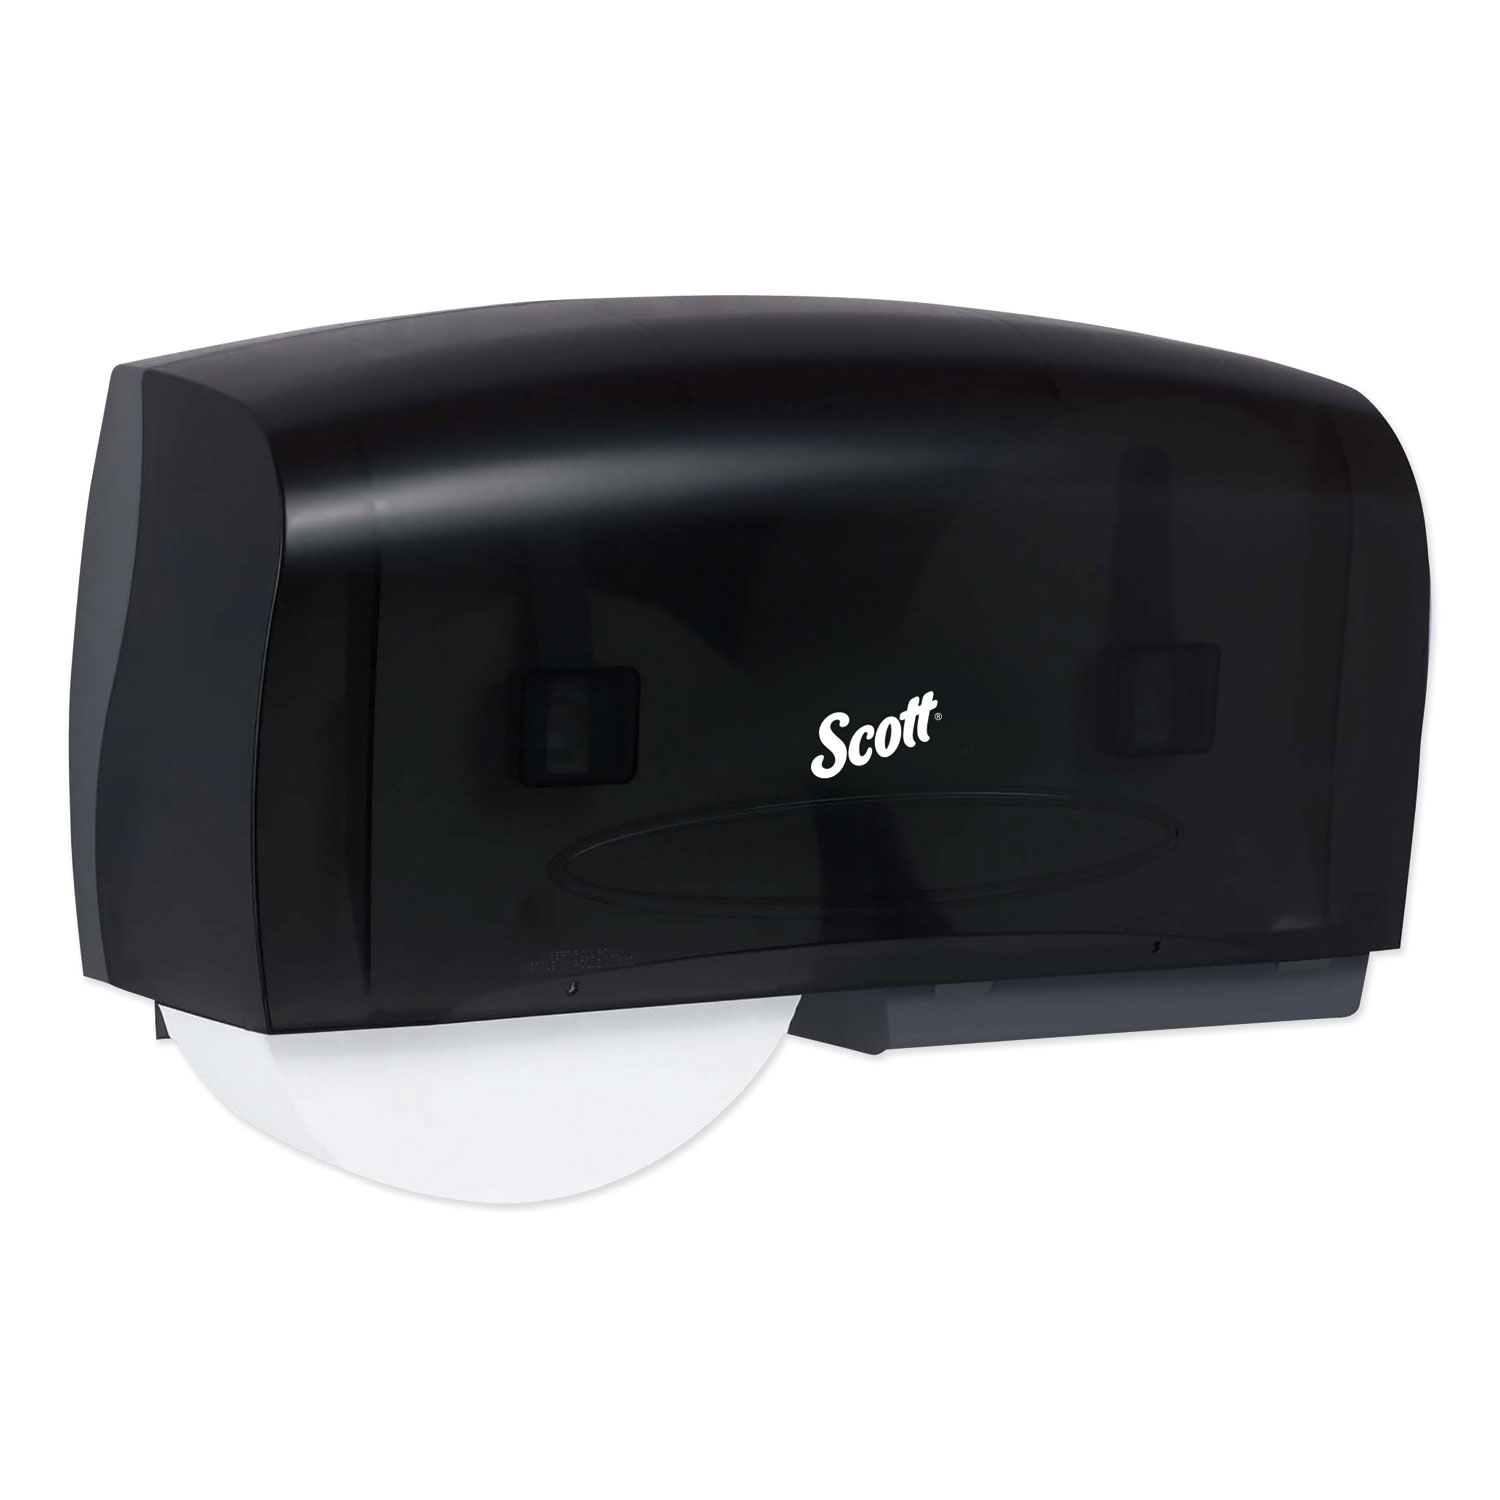  Scott 09608 Essential Coreless Twin Jumbo Roll Tissue Dispenser, 20 x 6 x 11, Black (KCC09608) 